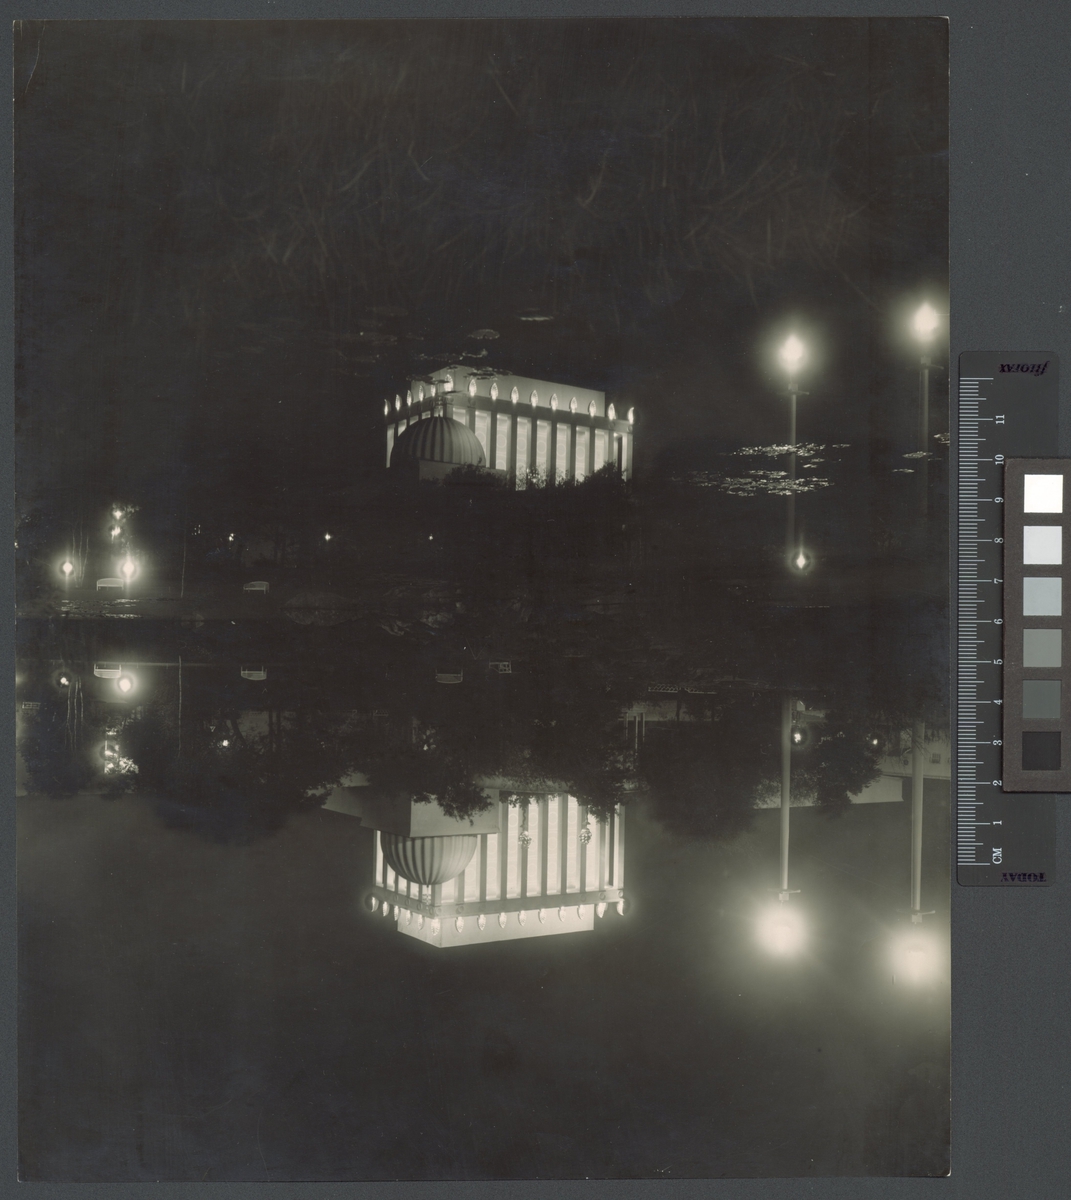 Göteborgs Jubileum (Minnesutställningen), 1923
Minneshallen, illumination, spegling i Näckrosdammen